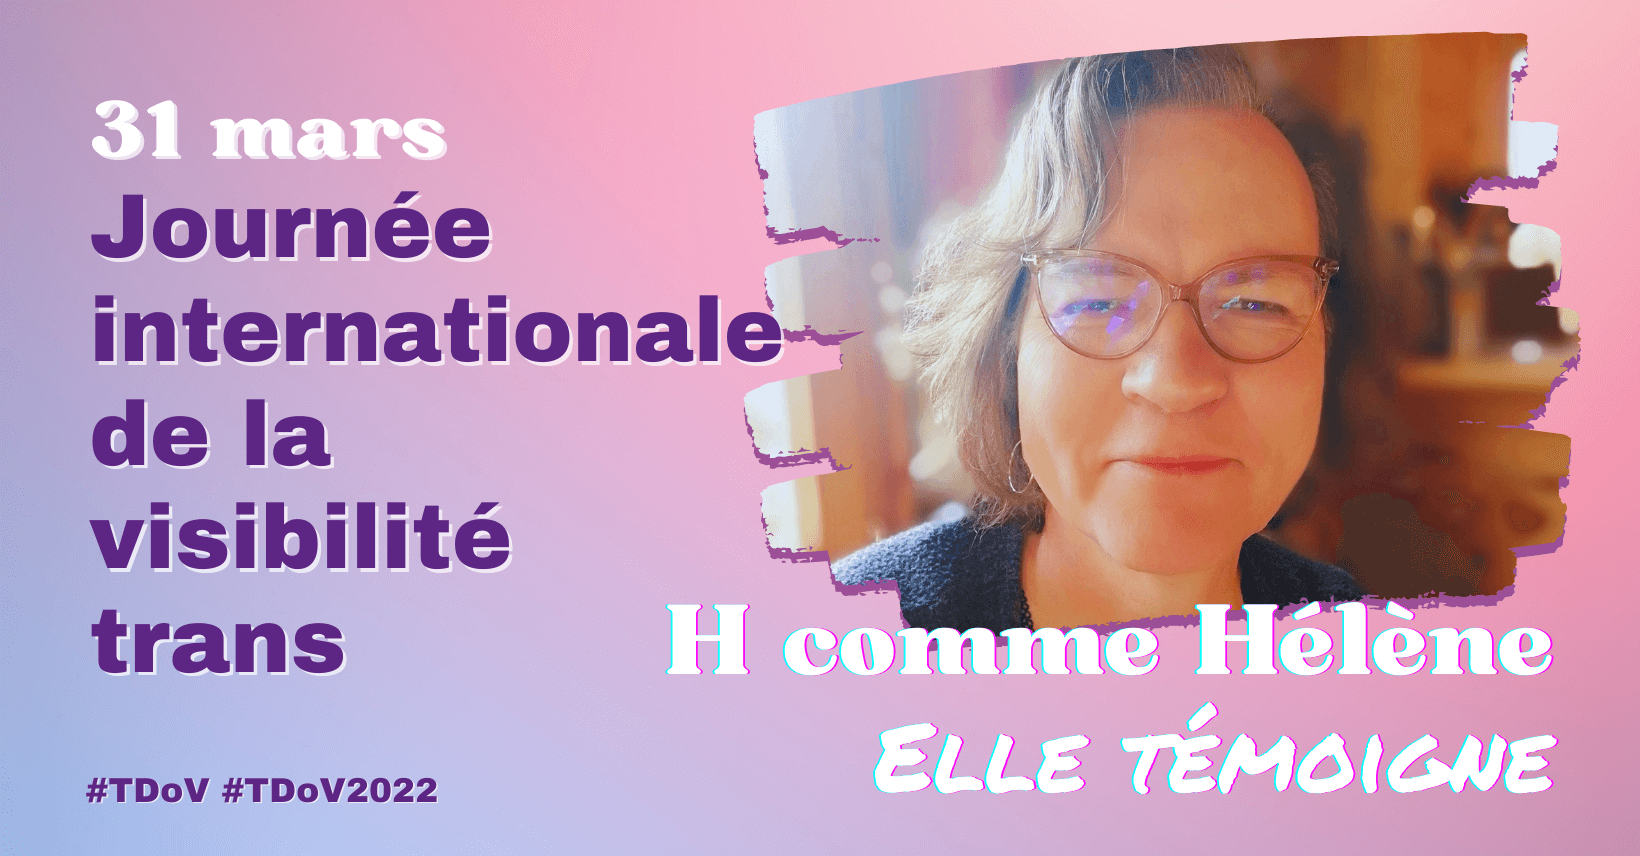 H comme Hélène, elle témoigne. 31 mars Journée internationale de la visibilité trans. TDoV 2022